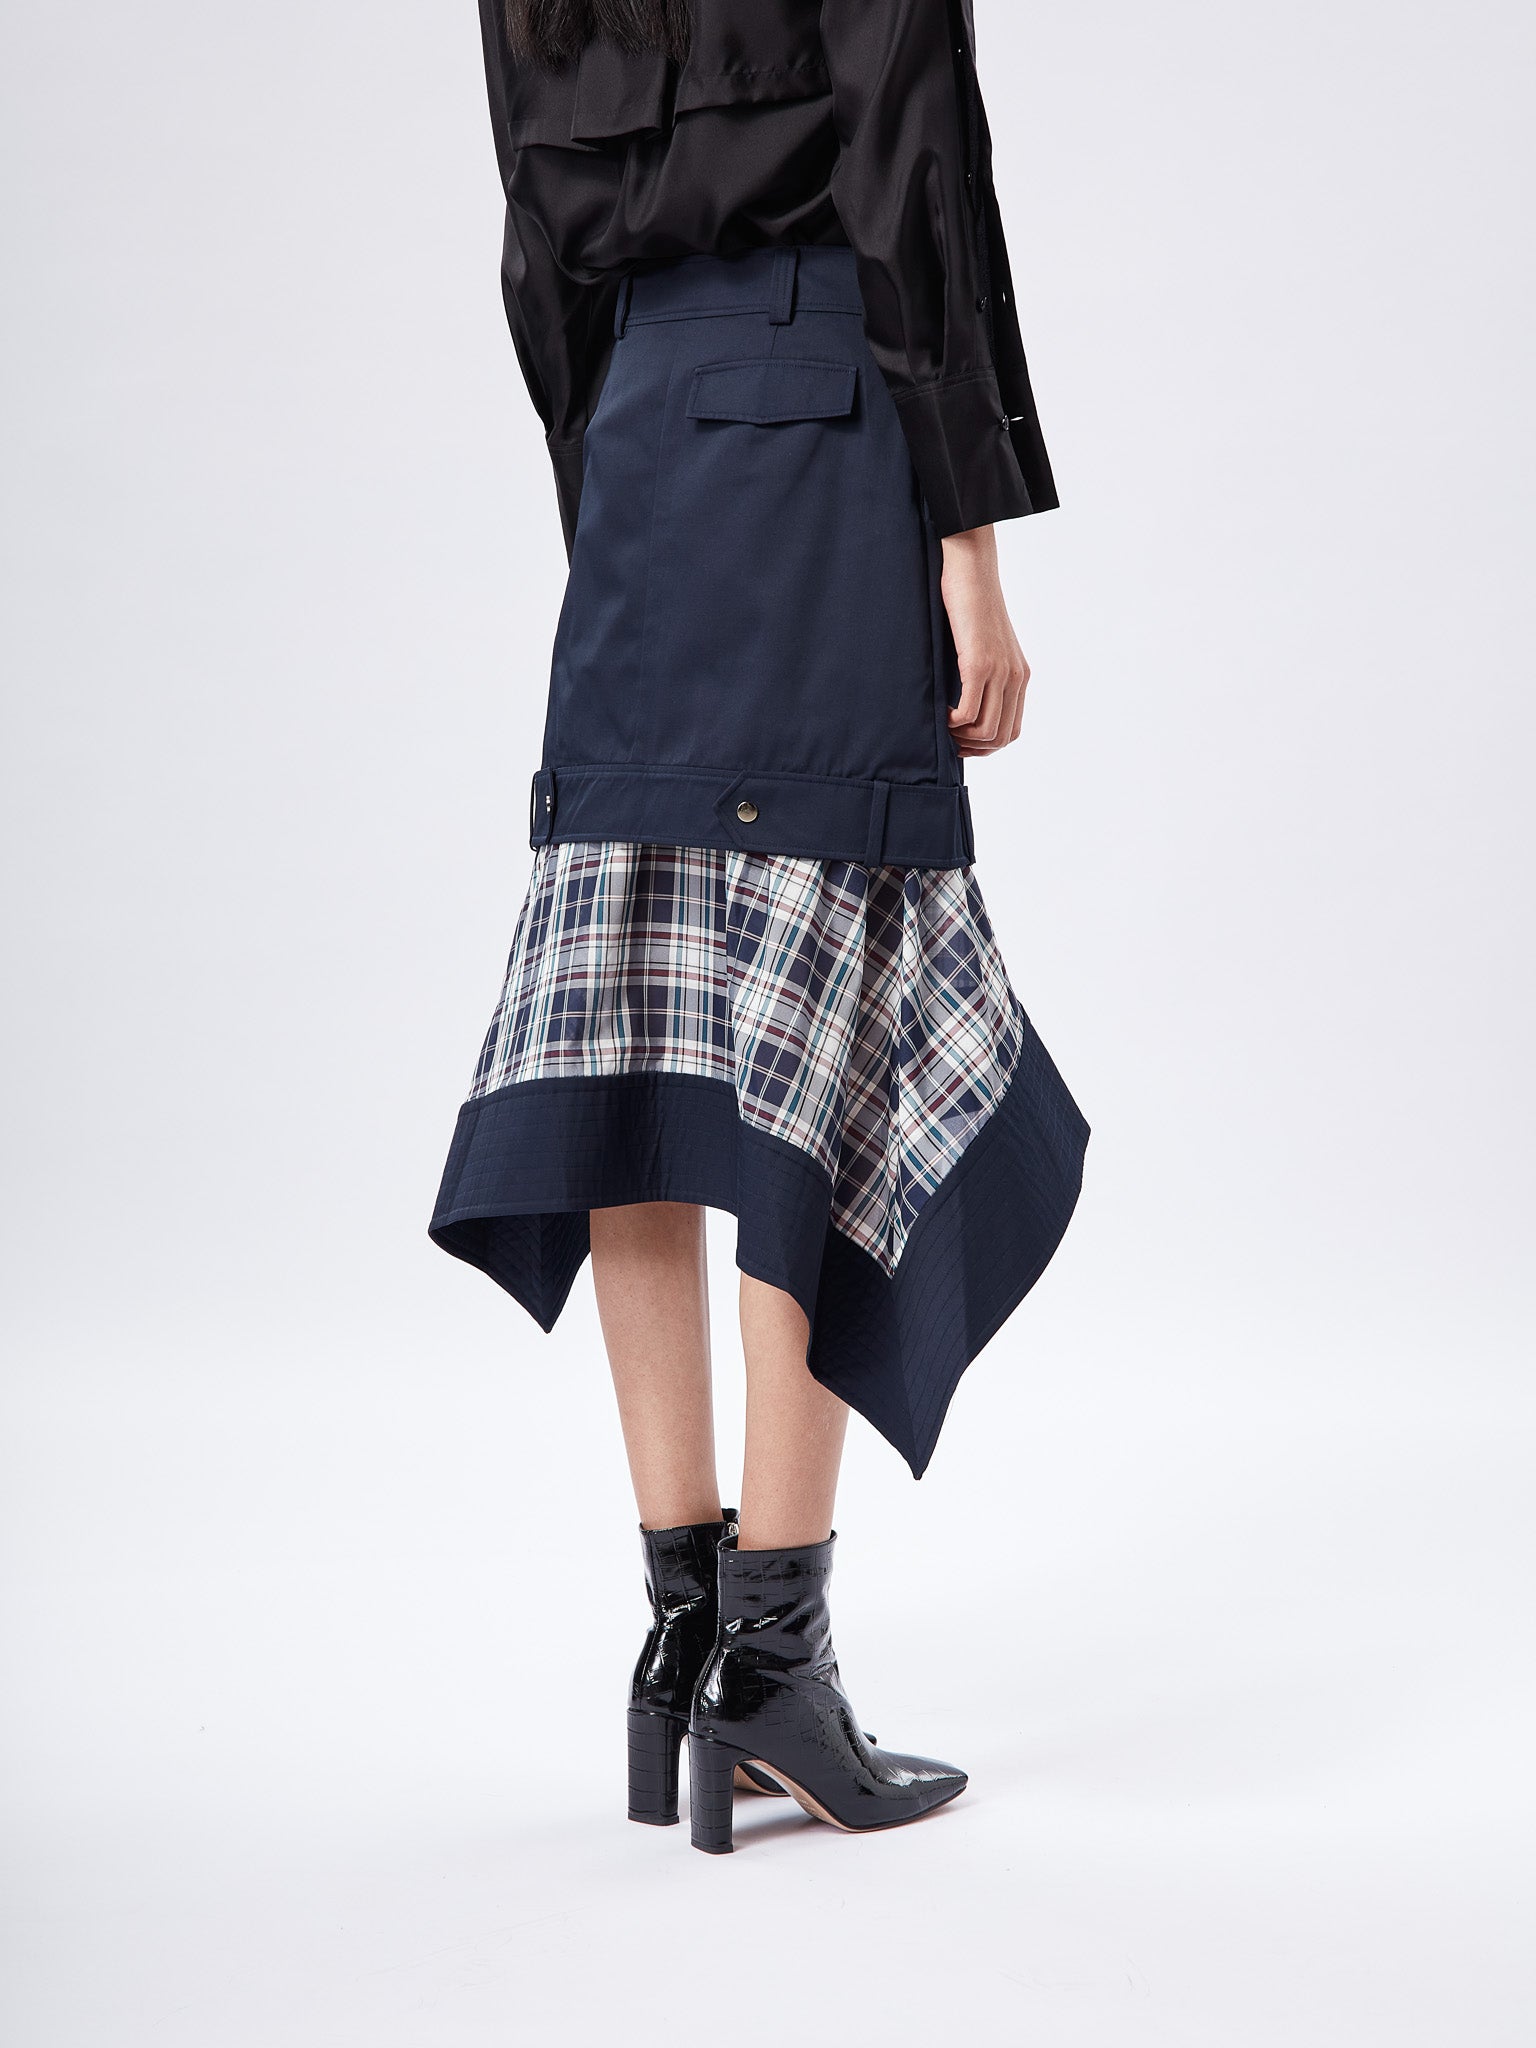 Feel So Good Peplum Skirt (Navy)